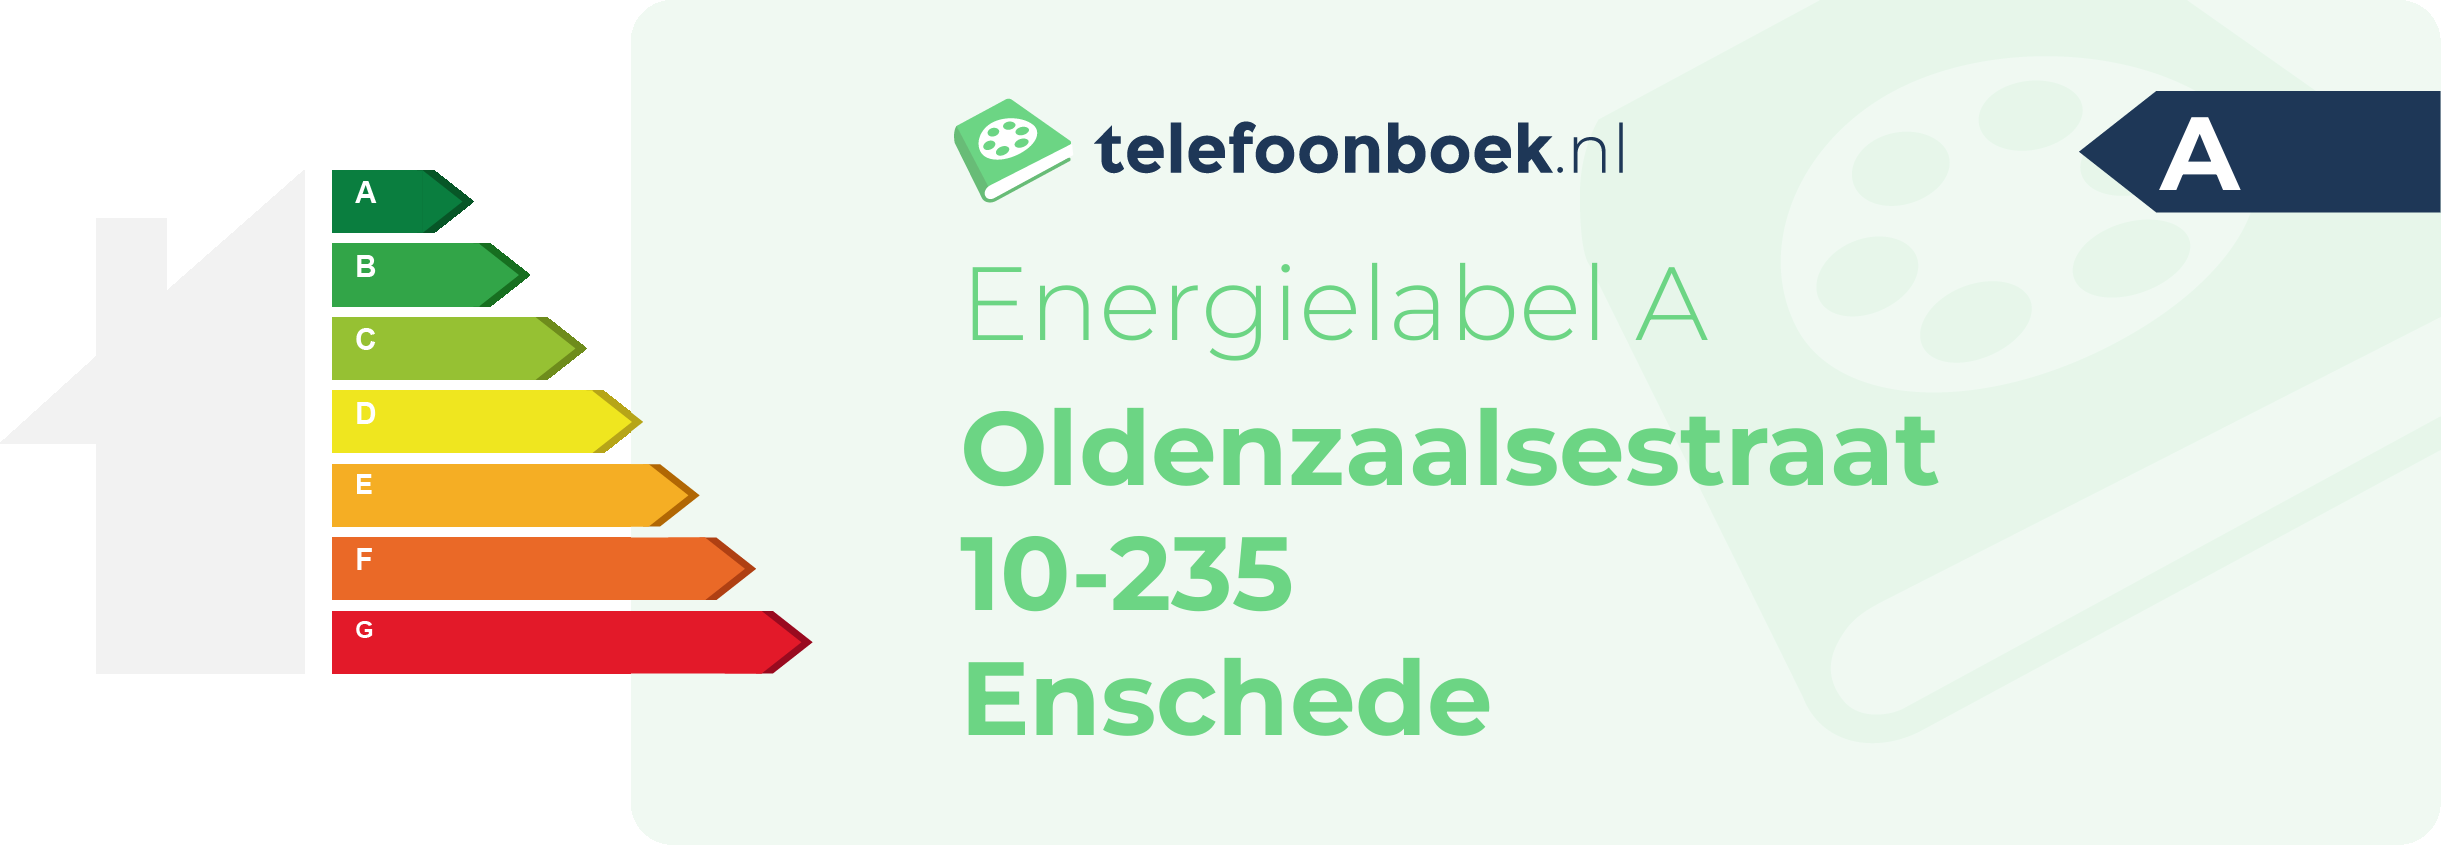 Energielabel Oldenzaalsestraat 10-235 Enschede